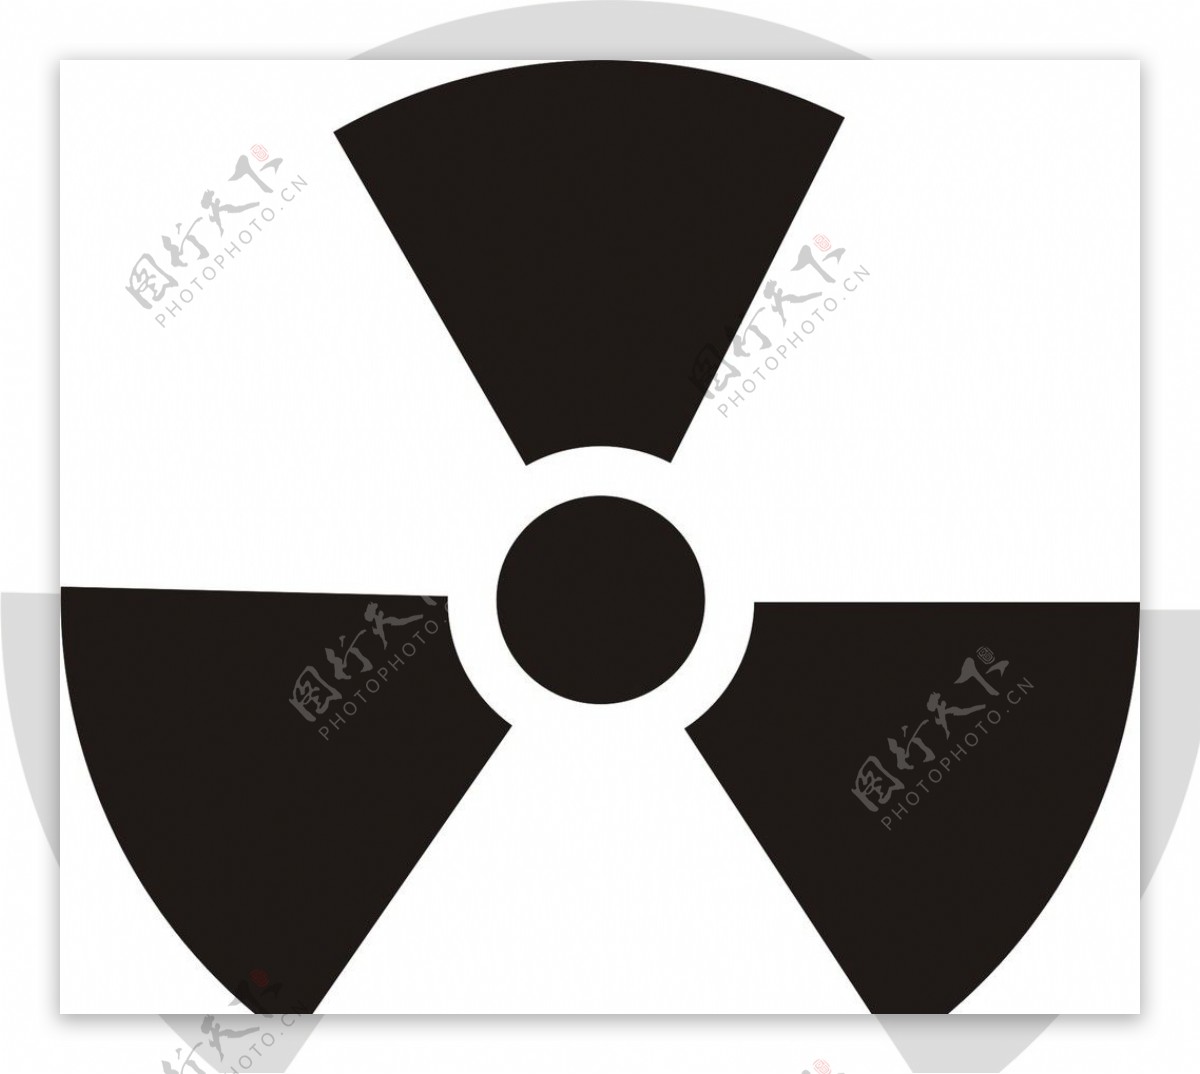 核辐射标志图片